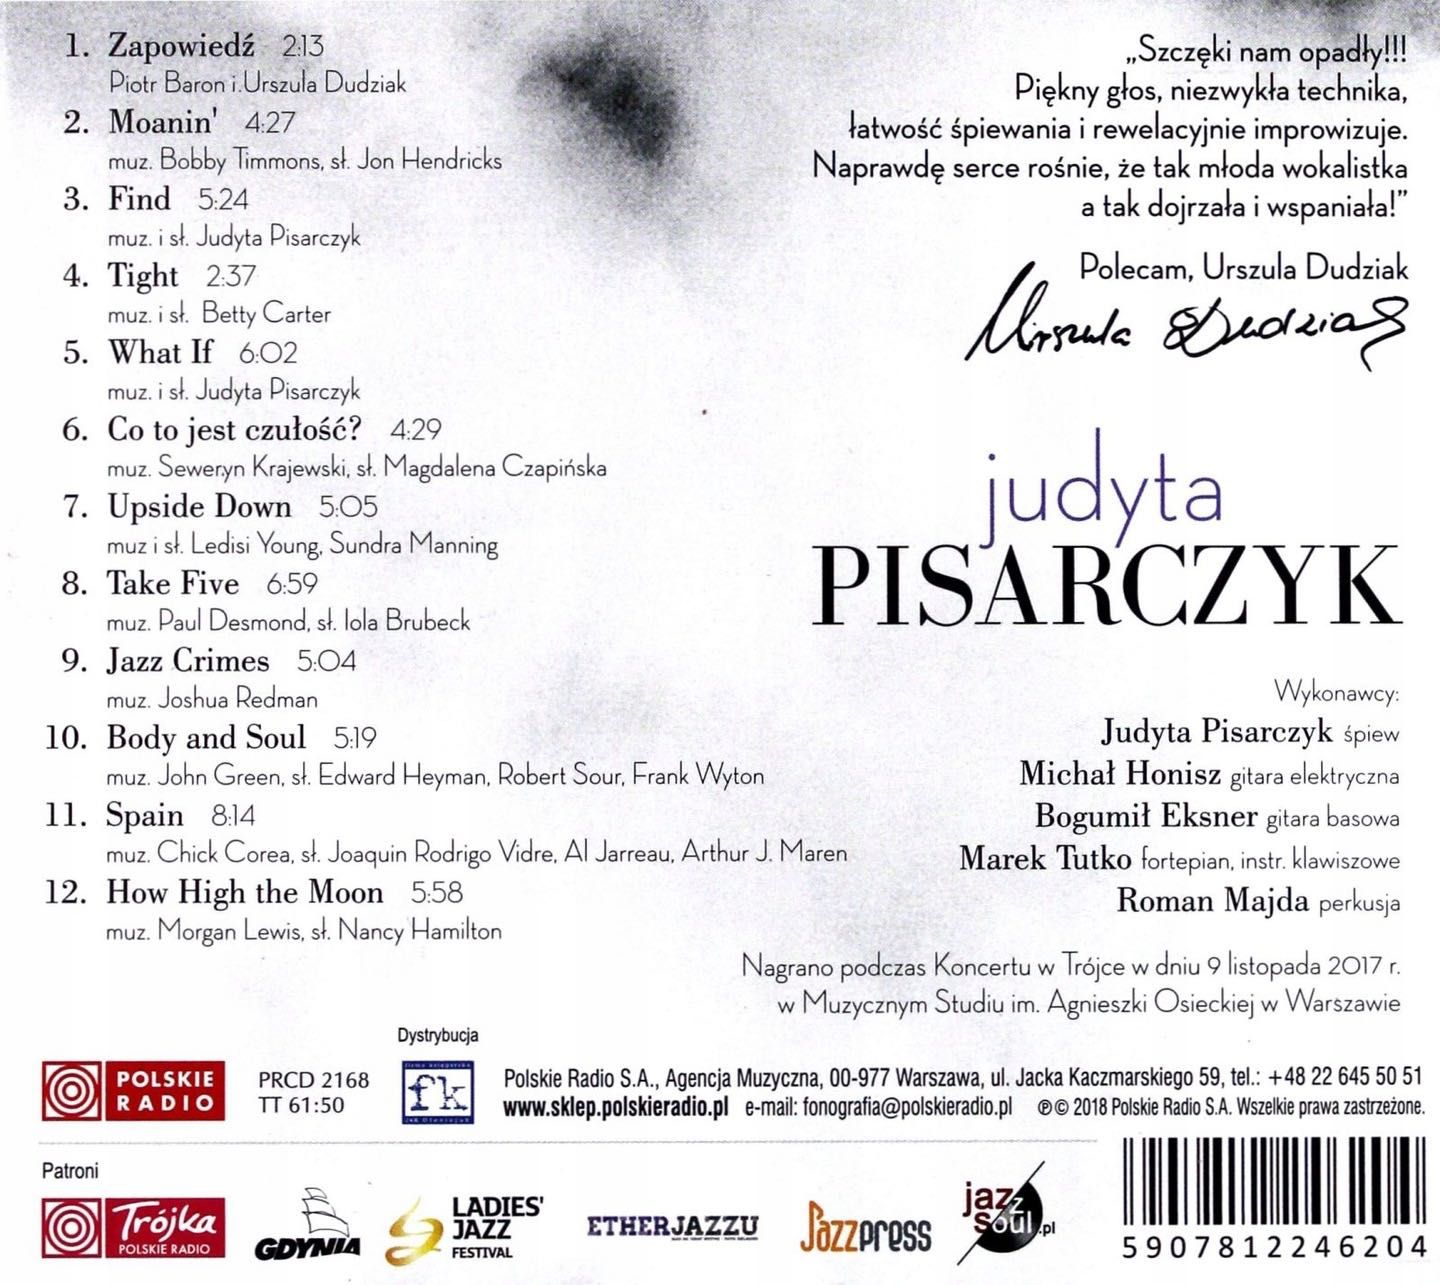 Judyta Pisarczyk - Koncert w Trójce (CD)